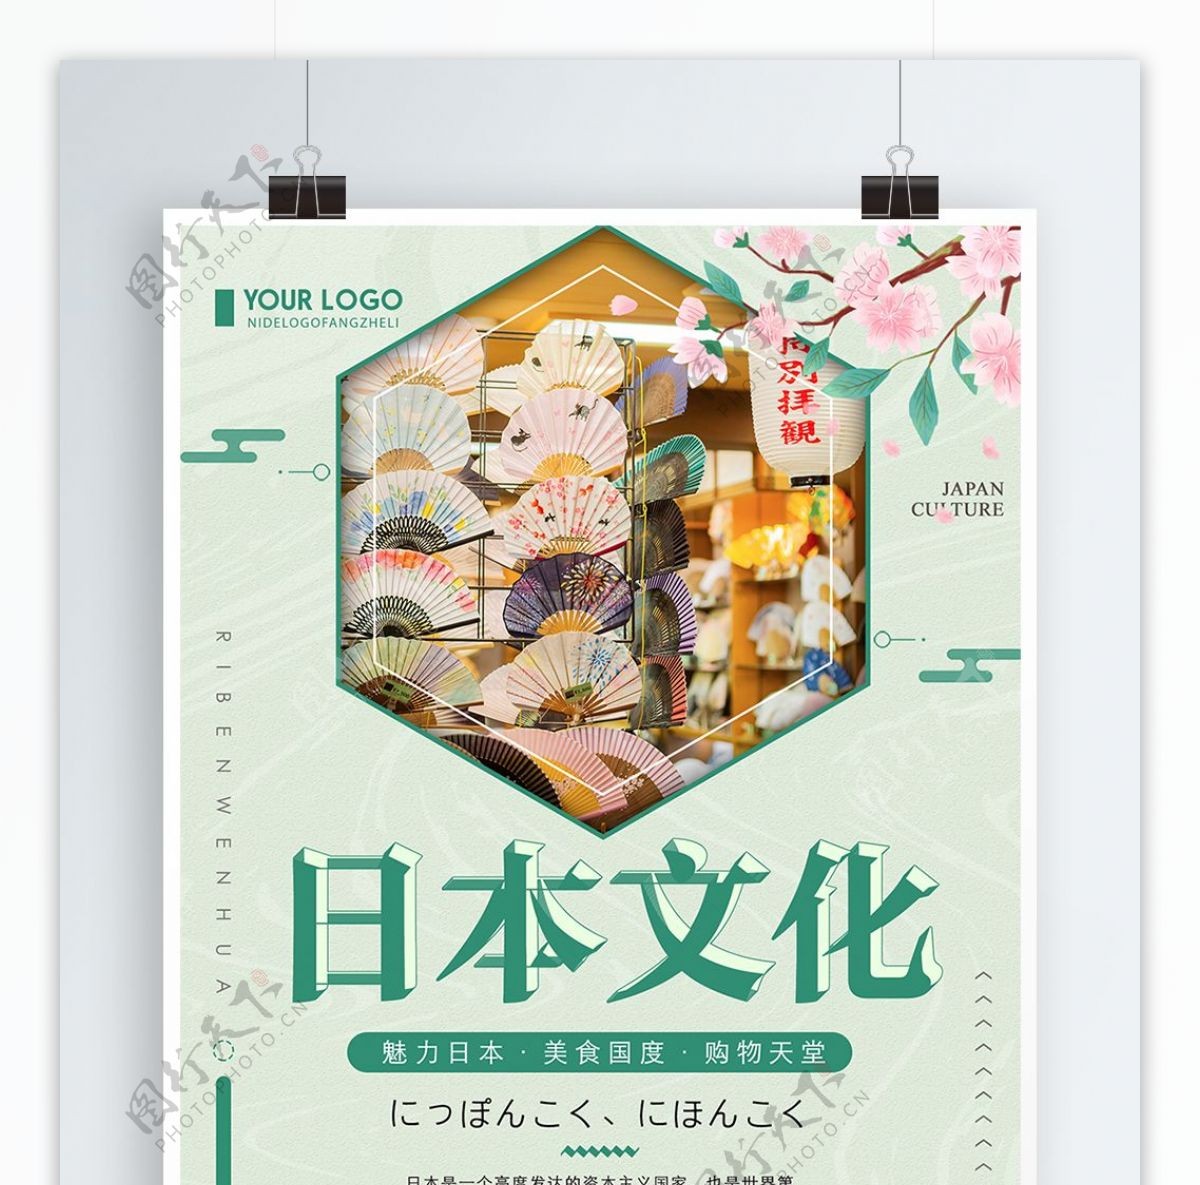 绿色清新简约日本文化宣传海报